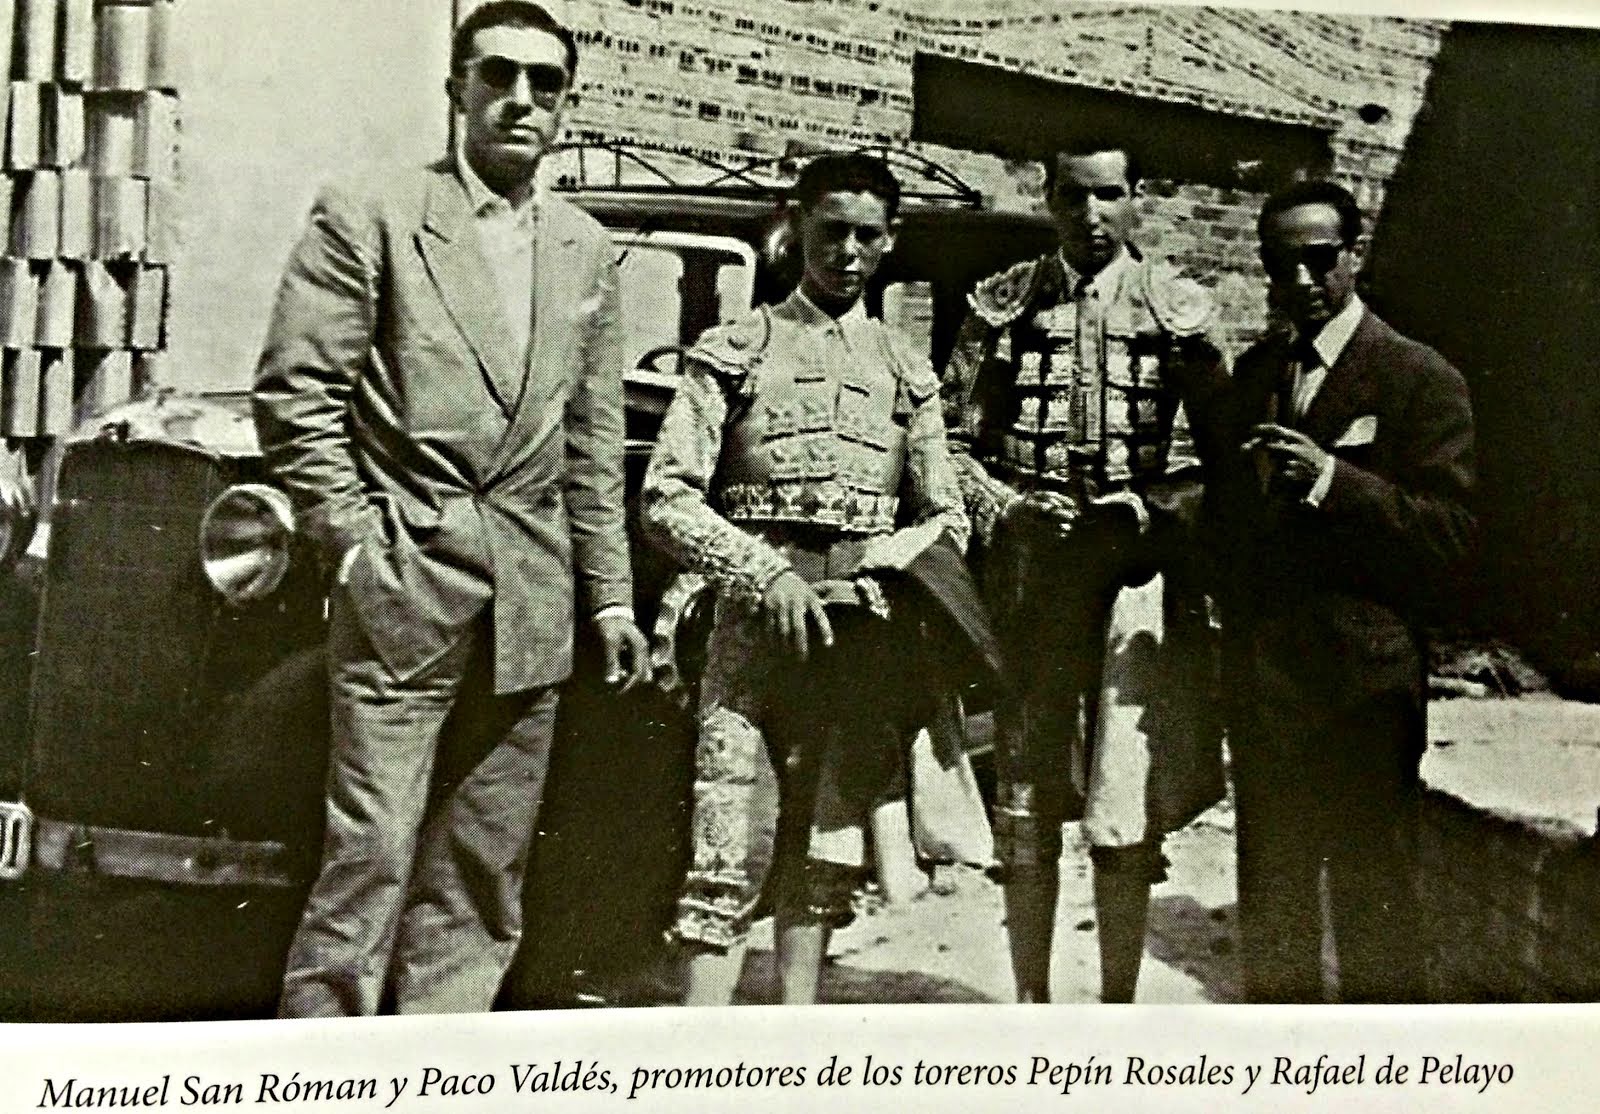 Manuel San Roman y Paco Valdes